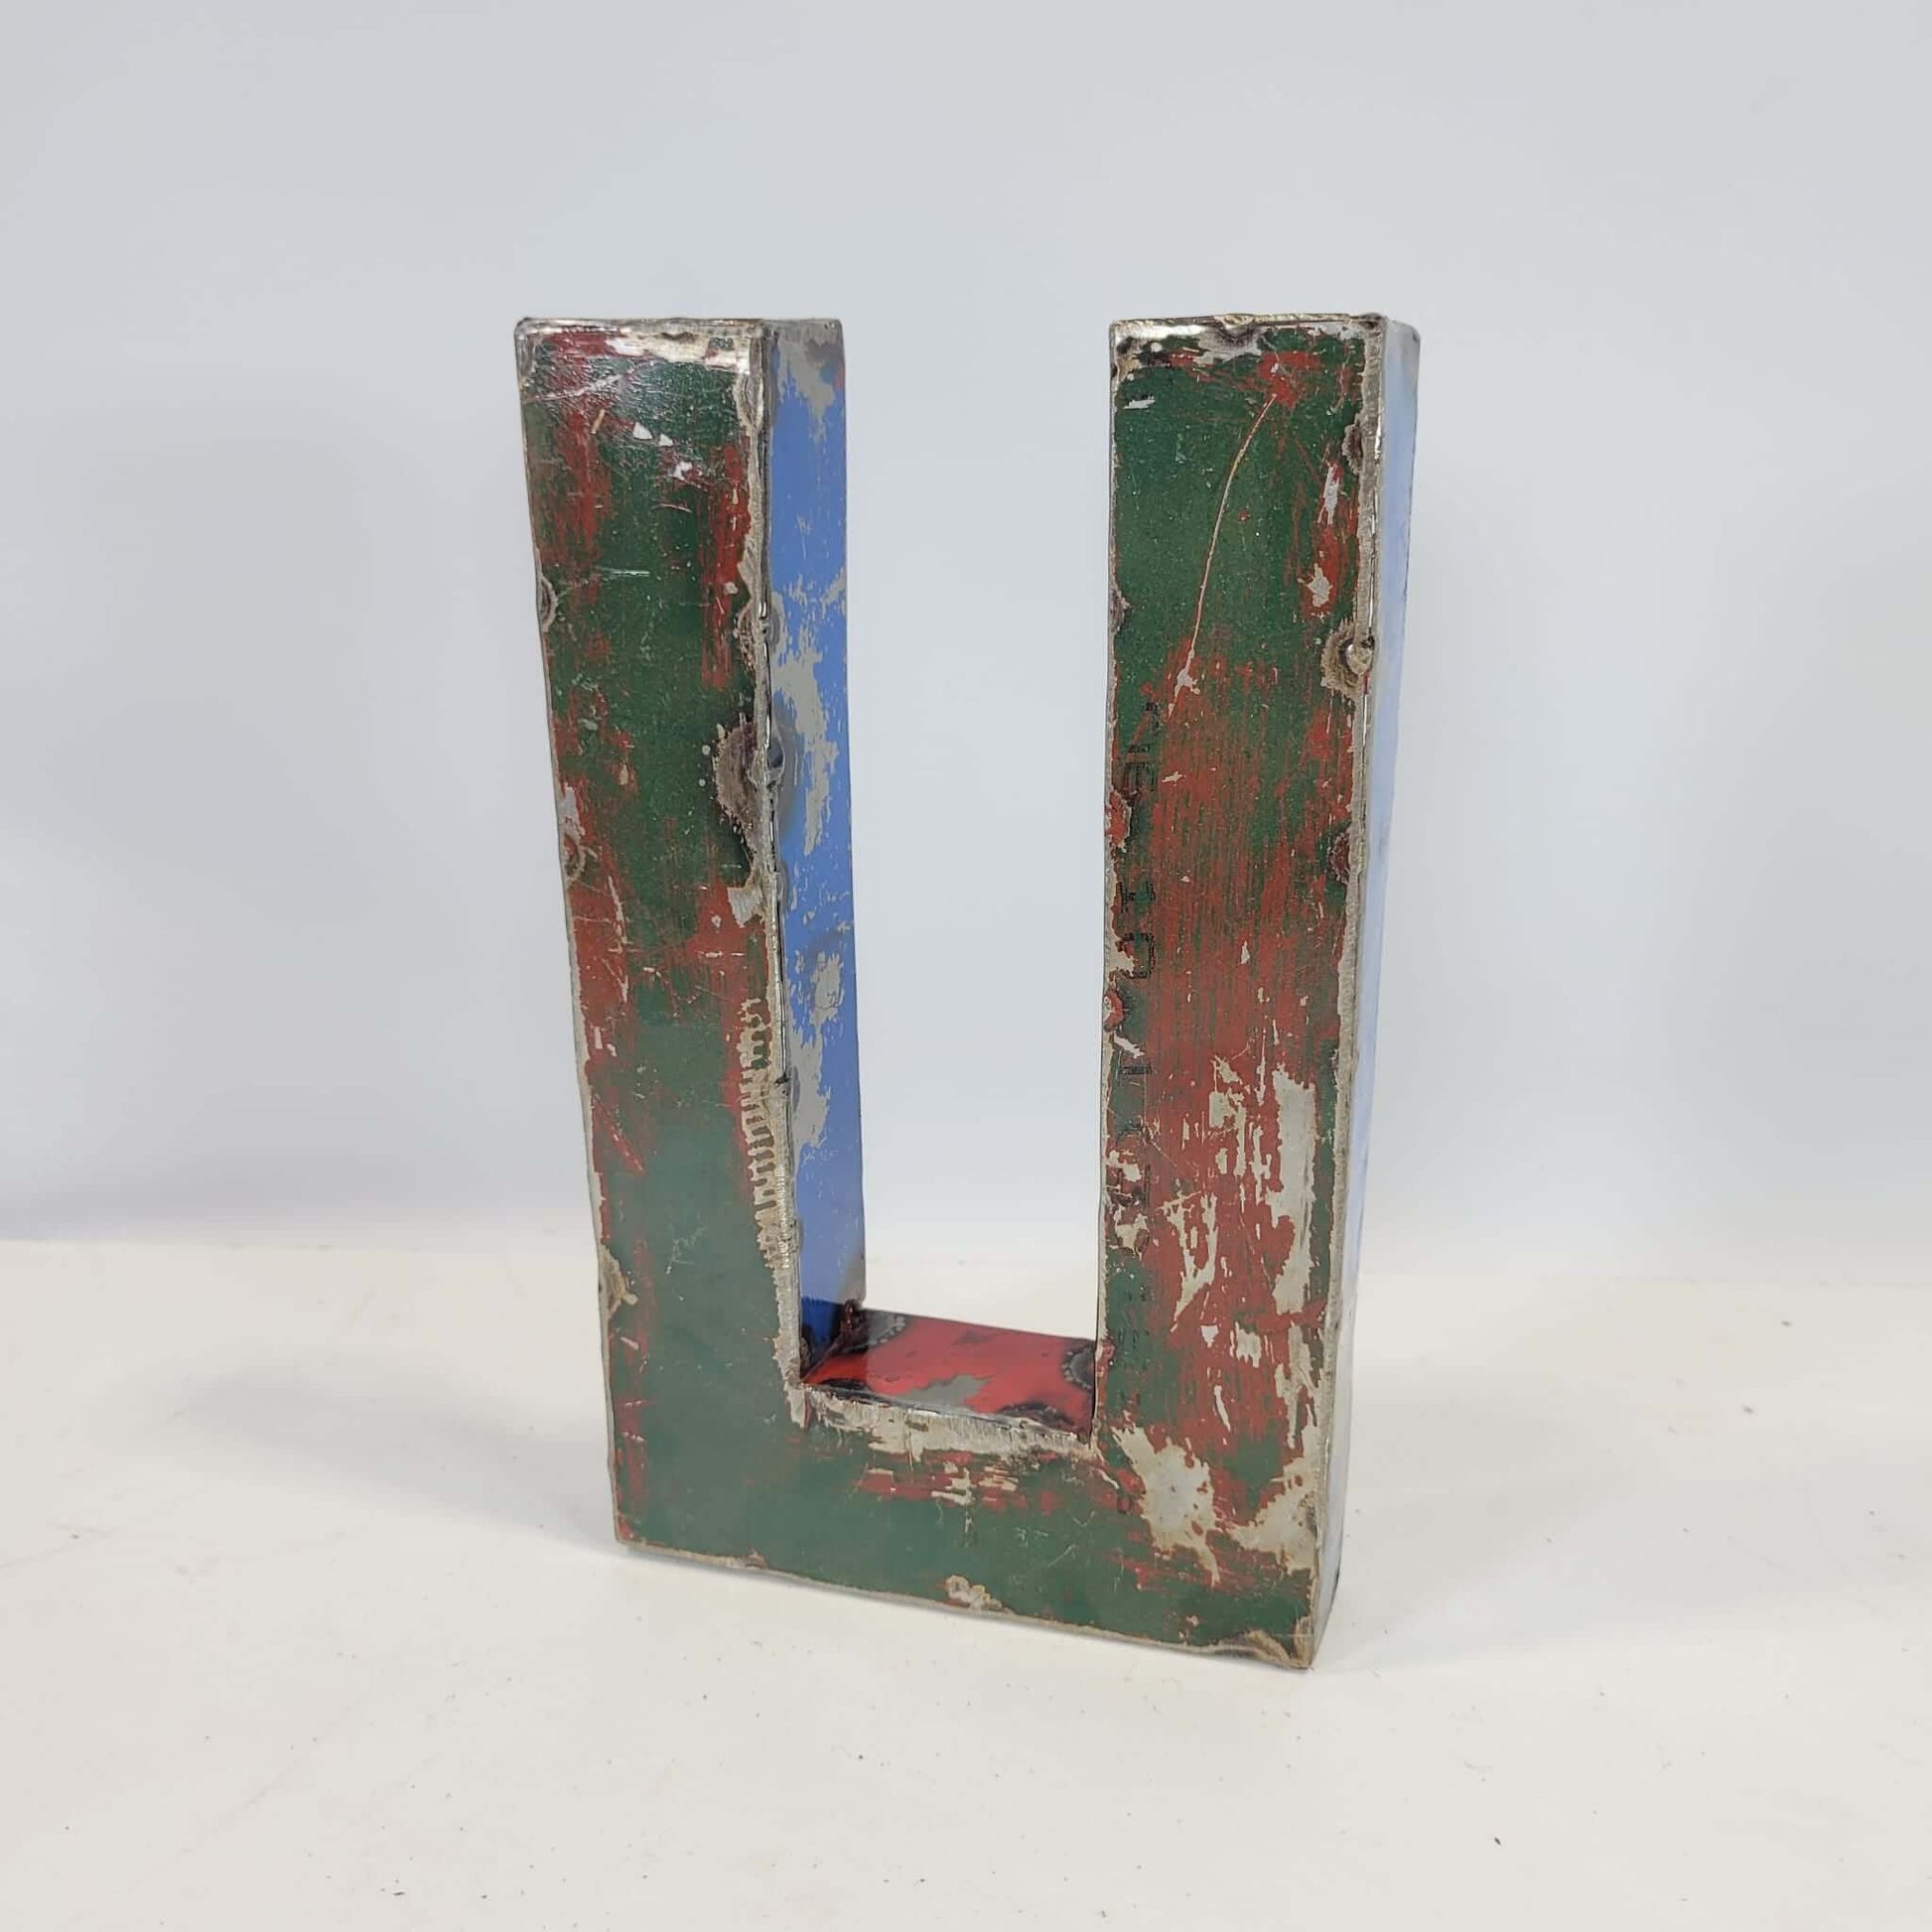 Buchstabe "U" aus recycelten Ölfässern | 22 oder 50 cm | verschiedene Farben